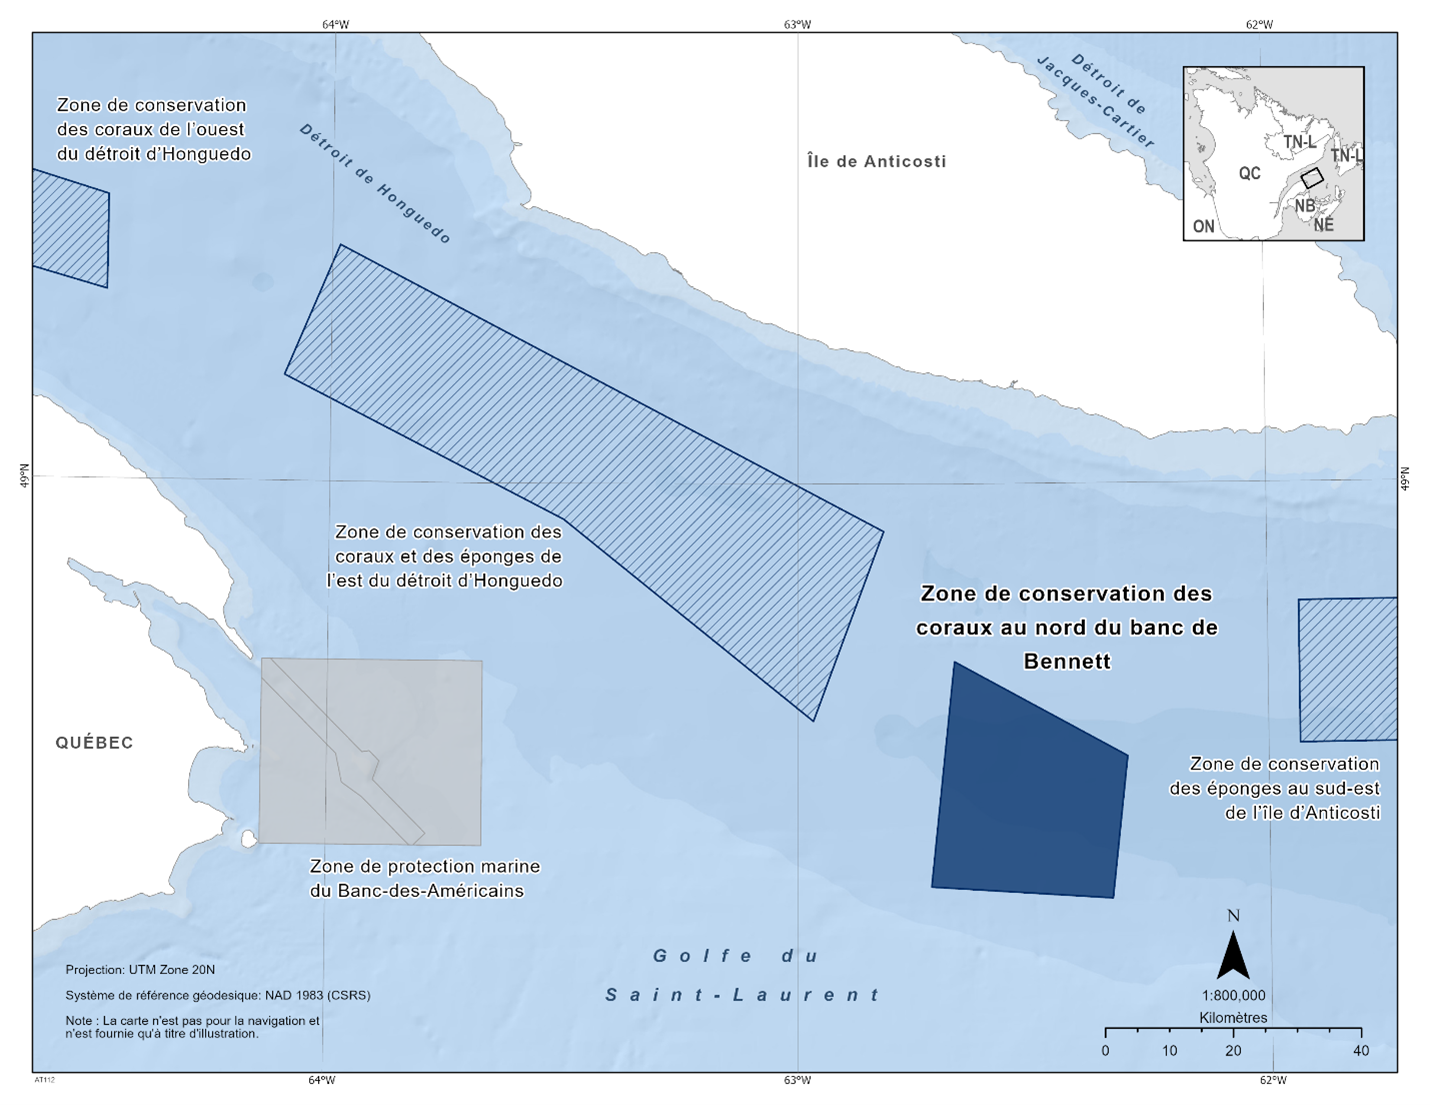 Carte de la zone de conservation des coraux au nord du banc de Bennett représentée en bleu foncé. La carte indique également les refuges marins situés à proximité par des lignes diagonales bleu foncé (zone de conservation du corail du détroit d'Honguedo occidental, zone de conservation du corail et de l'éponge du détroit d'Honguedo oriental, zone de conservation de l'éponge du sud-est de l'île d'Anticosti).